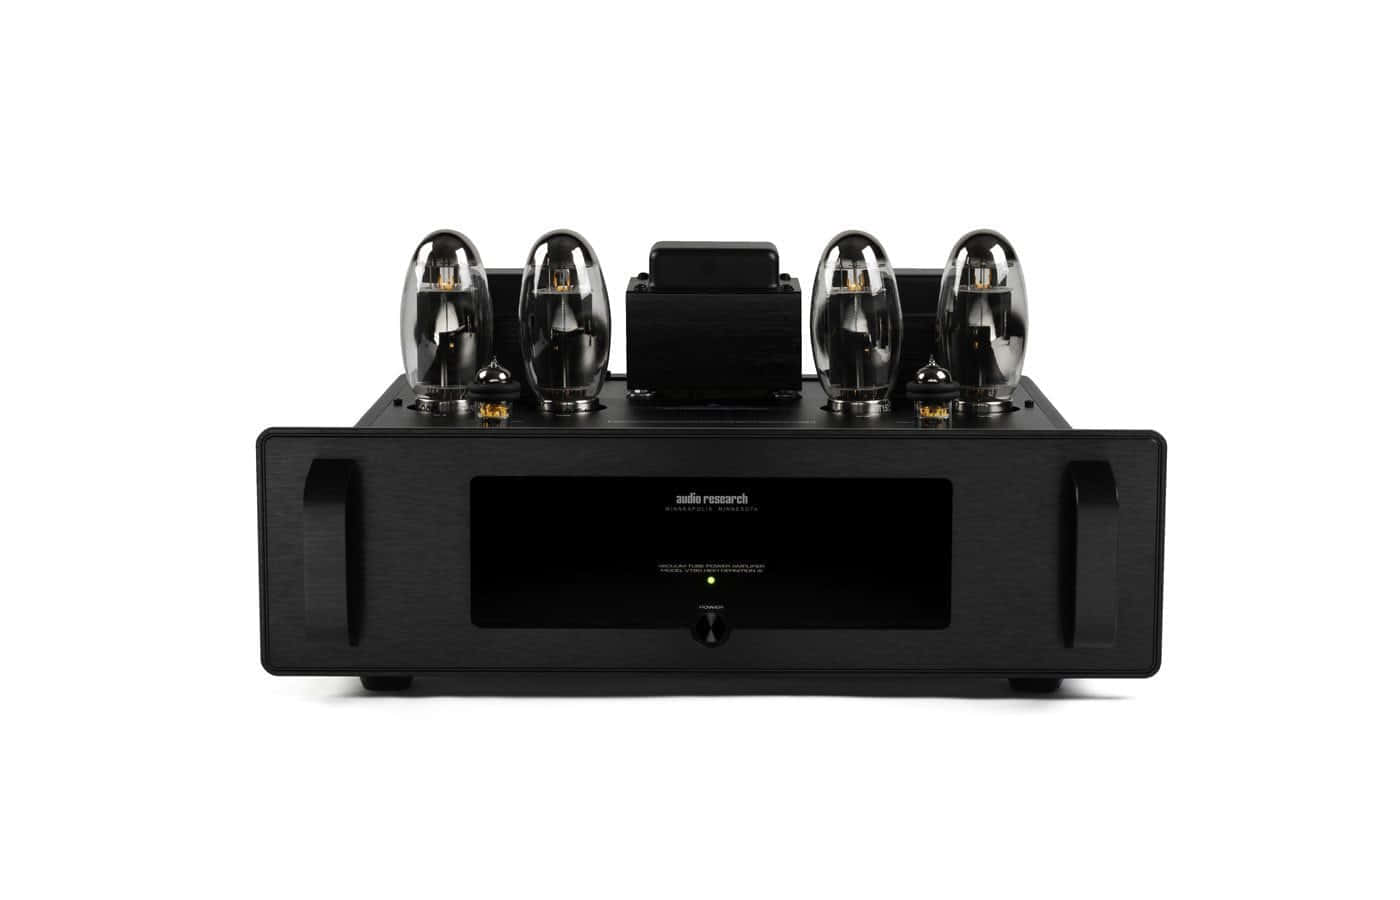 Усилители мощности Audio Research VT80SE Black усилители мощности audio research reference 160m silver